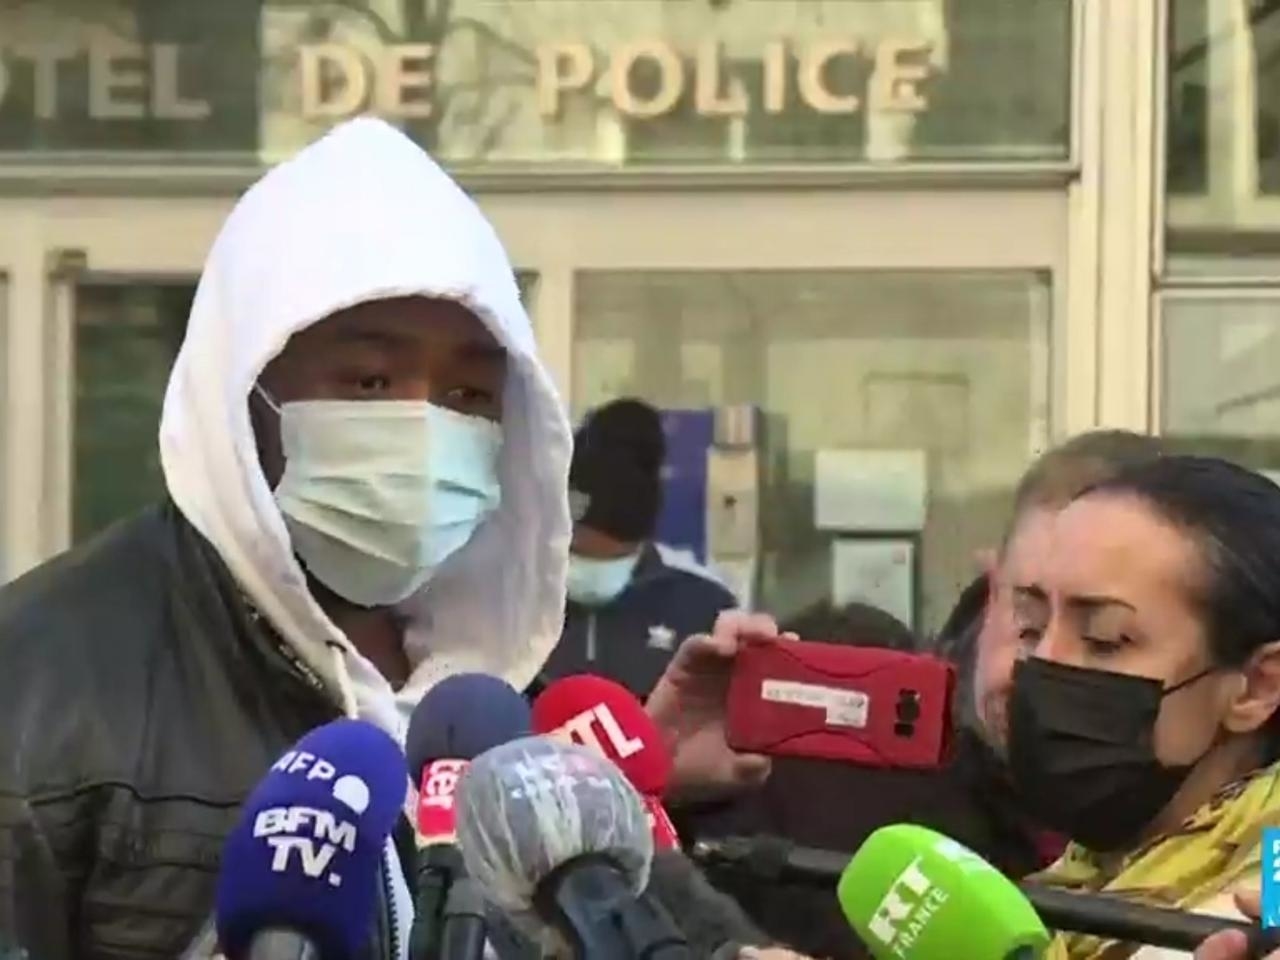 Paris police officers suspended over video showing brutal arrest of Black music producer